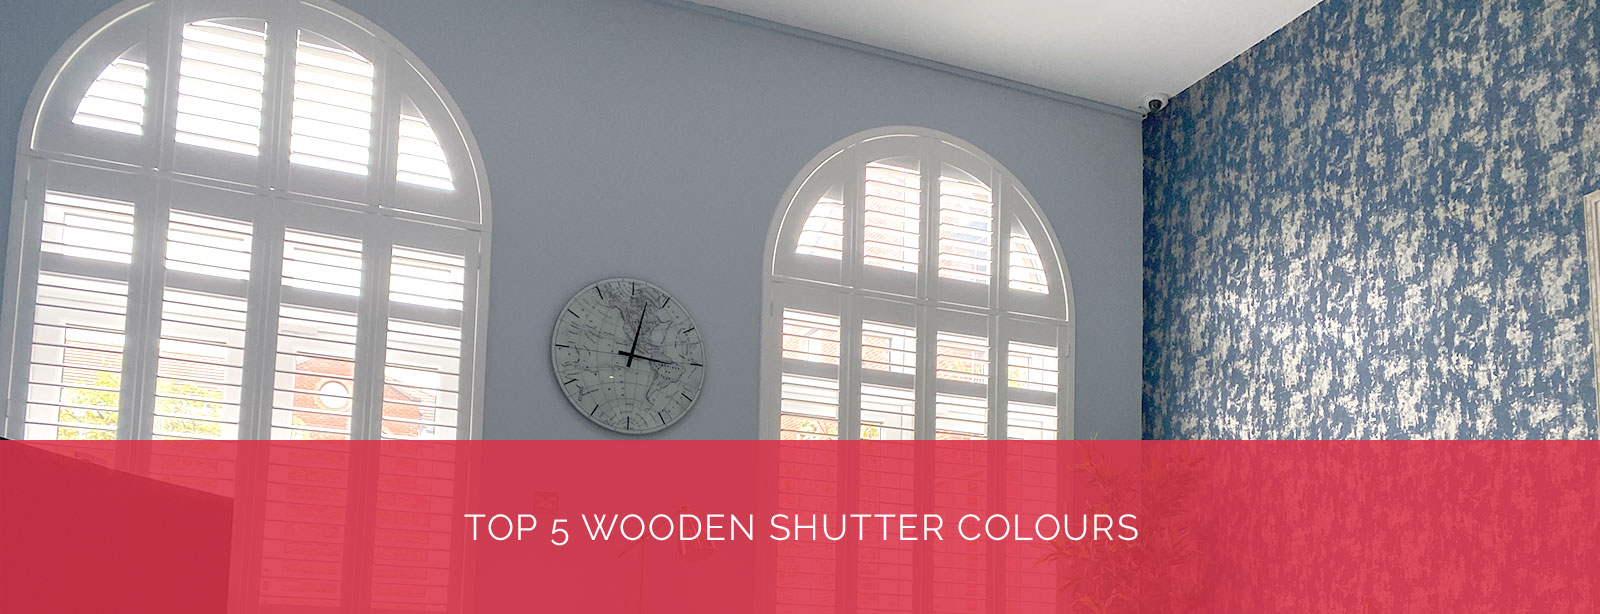 Top 5 Wooden Shutter Colours